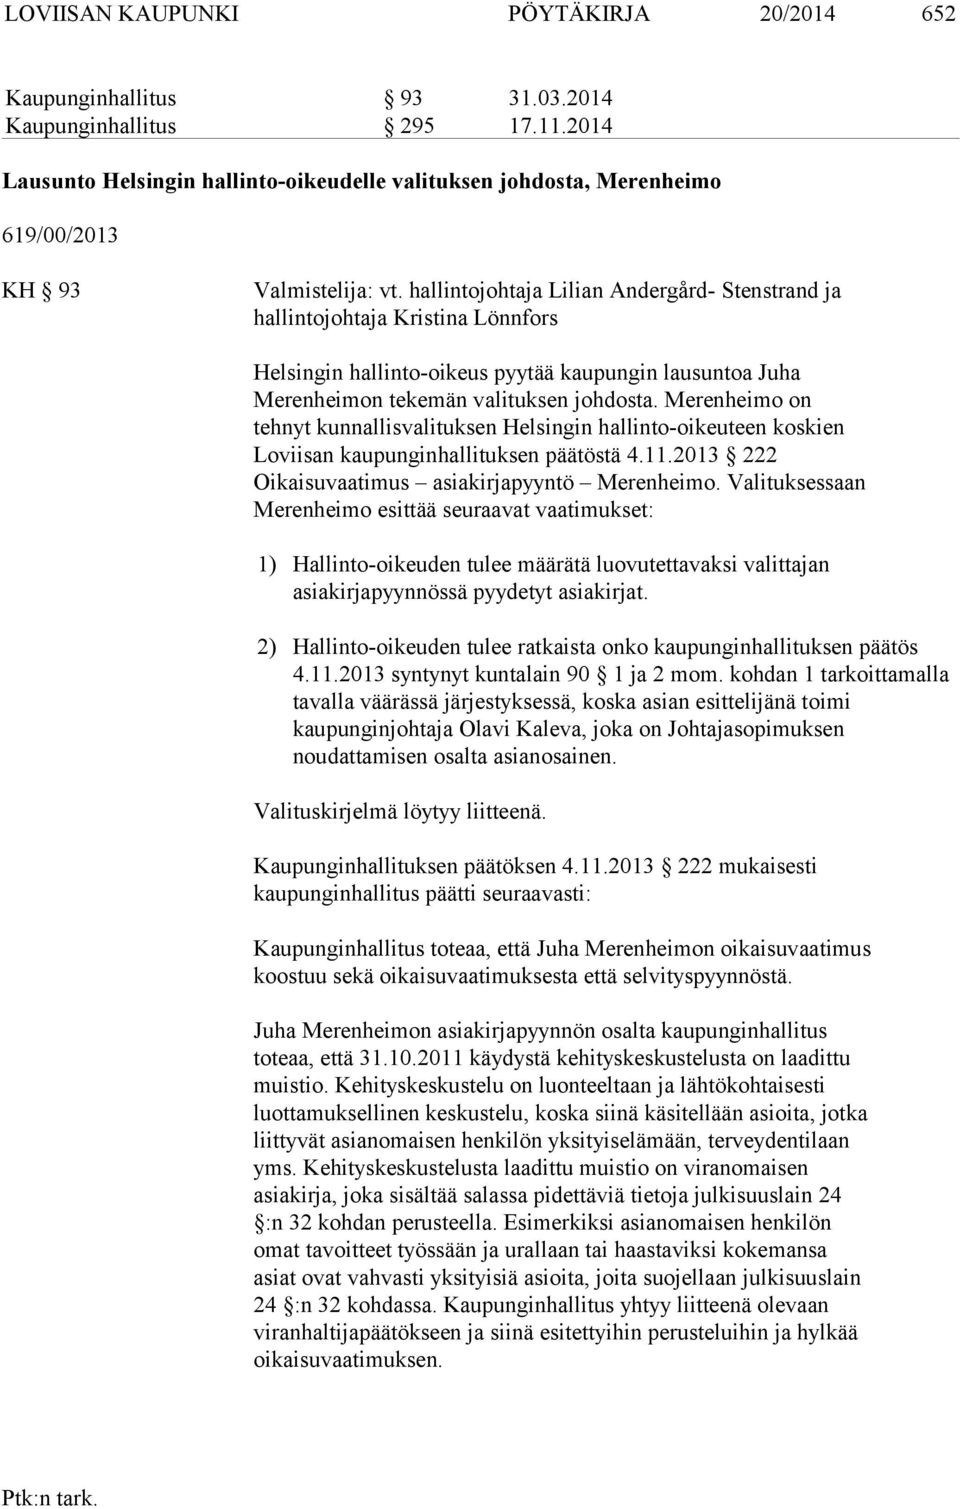 hallintojohtaja Lilian Andergård- Stenstrand ja hallintojohtaja Kristina Lönnfors Helsingin hallinto-oikeus pyytää kaupungin lausuntoa Juha Merenheimon tekemän valituksen johdosta.